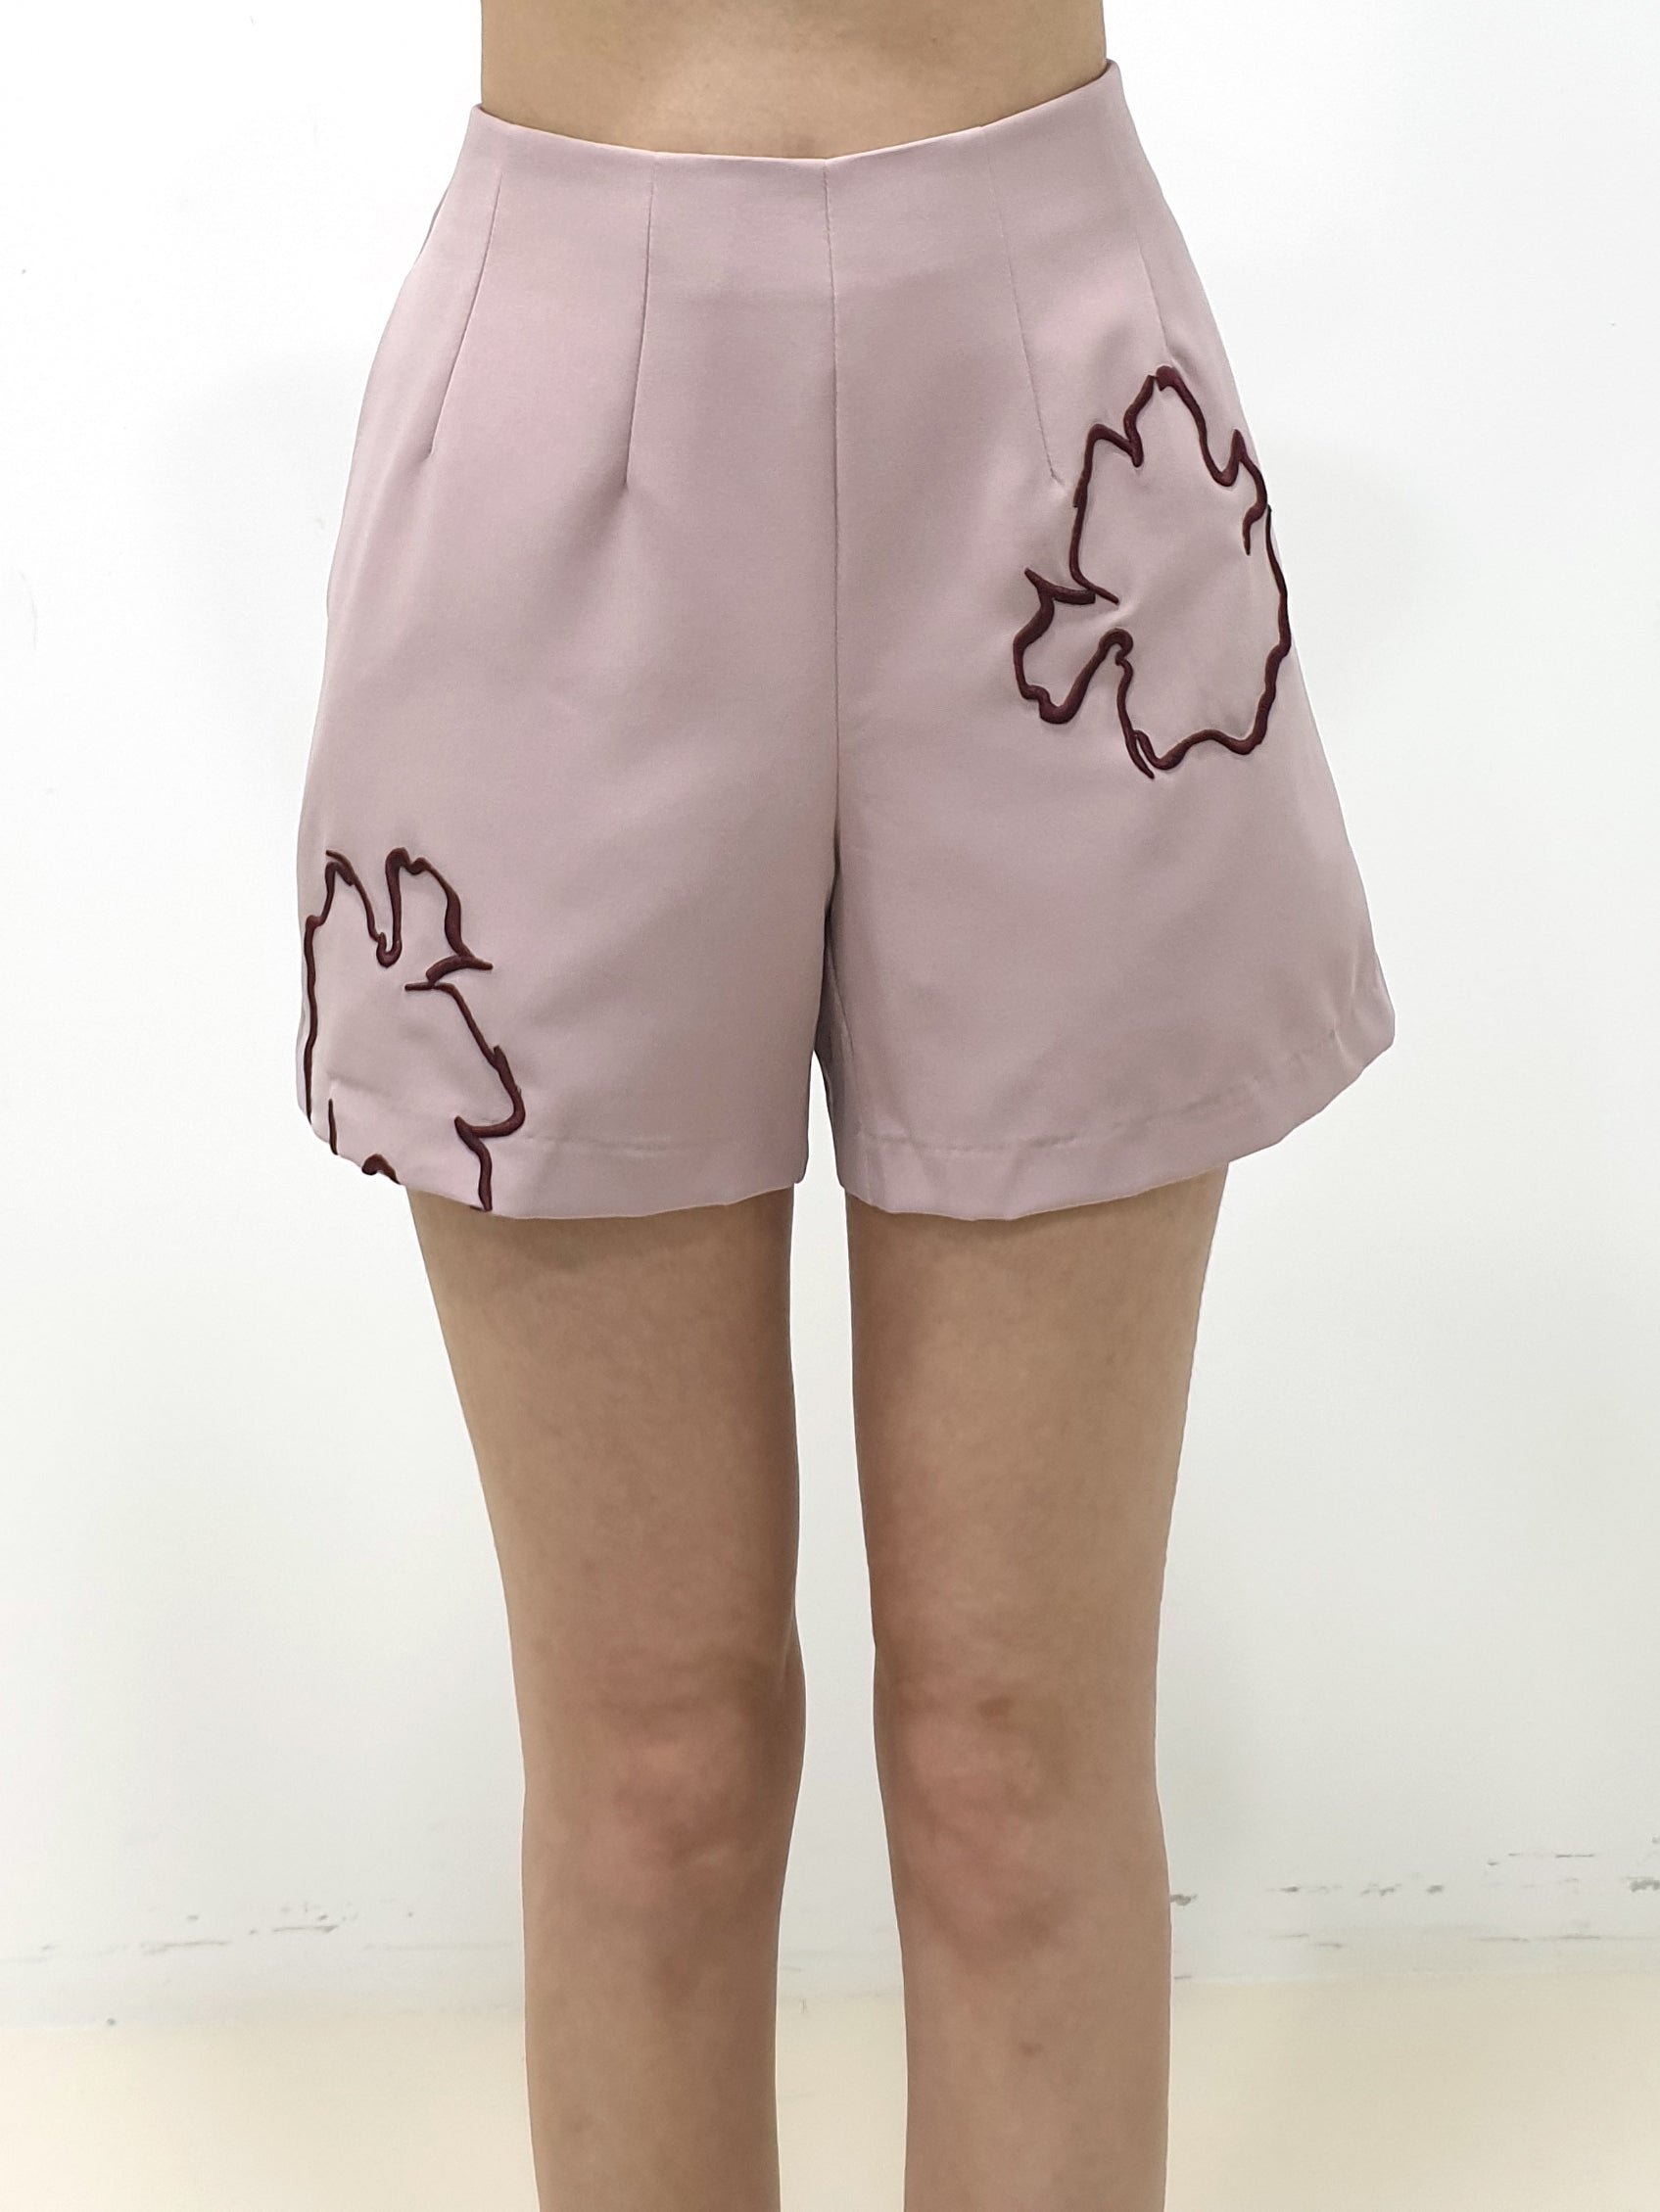 Petals Outline Shorts (Non-returnable) - Ferlicious